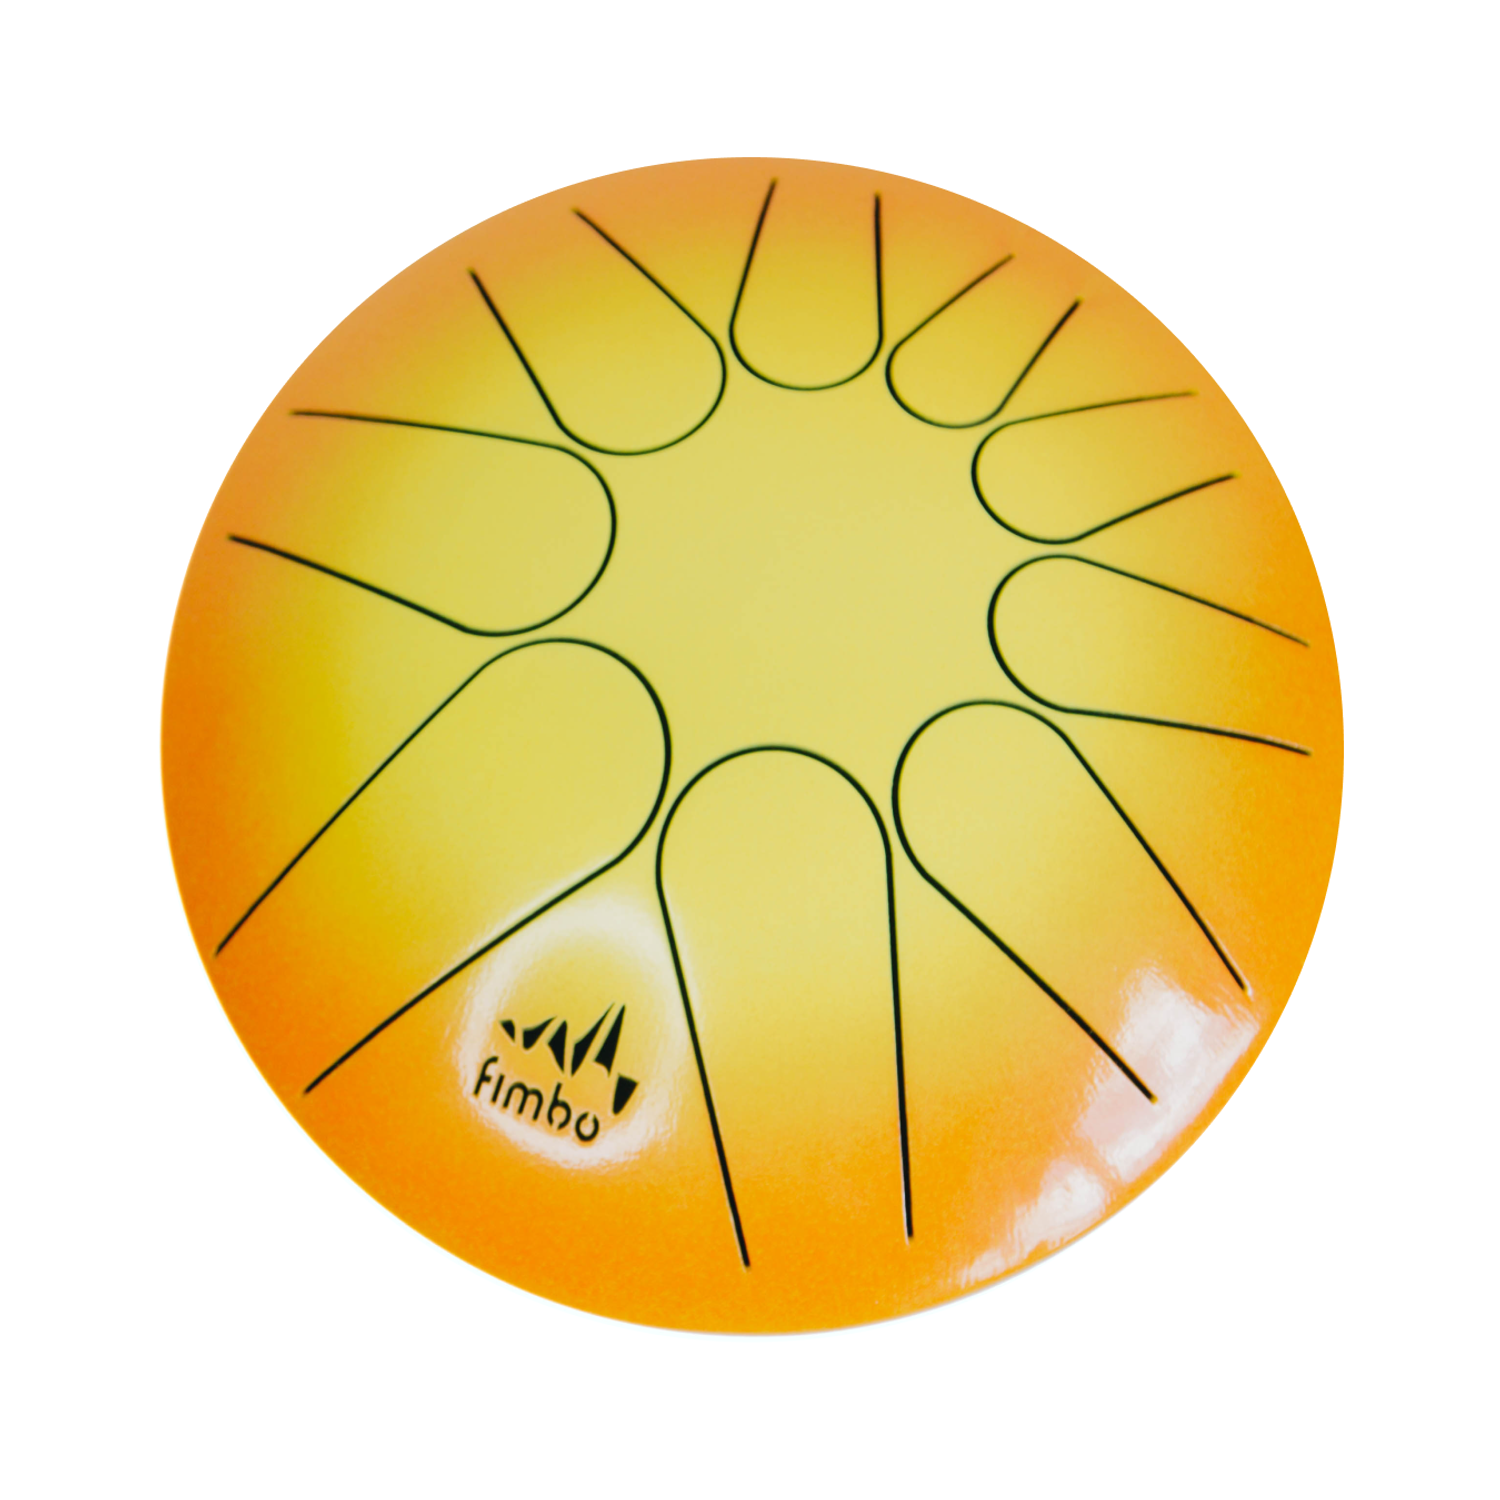 Развивающий барабан Fimbo Солнце (22 см) тональный язычковый барабан Фимбо – музыкальный инструмент - фото 1